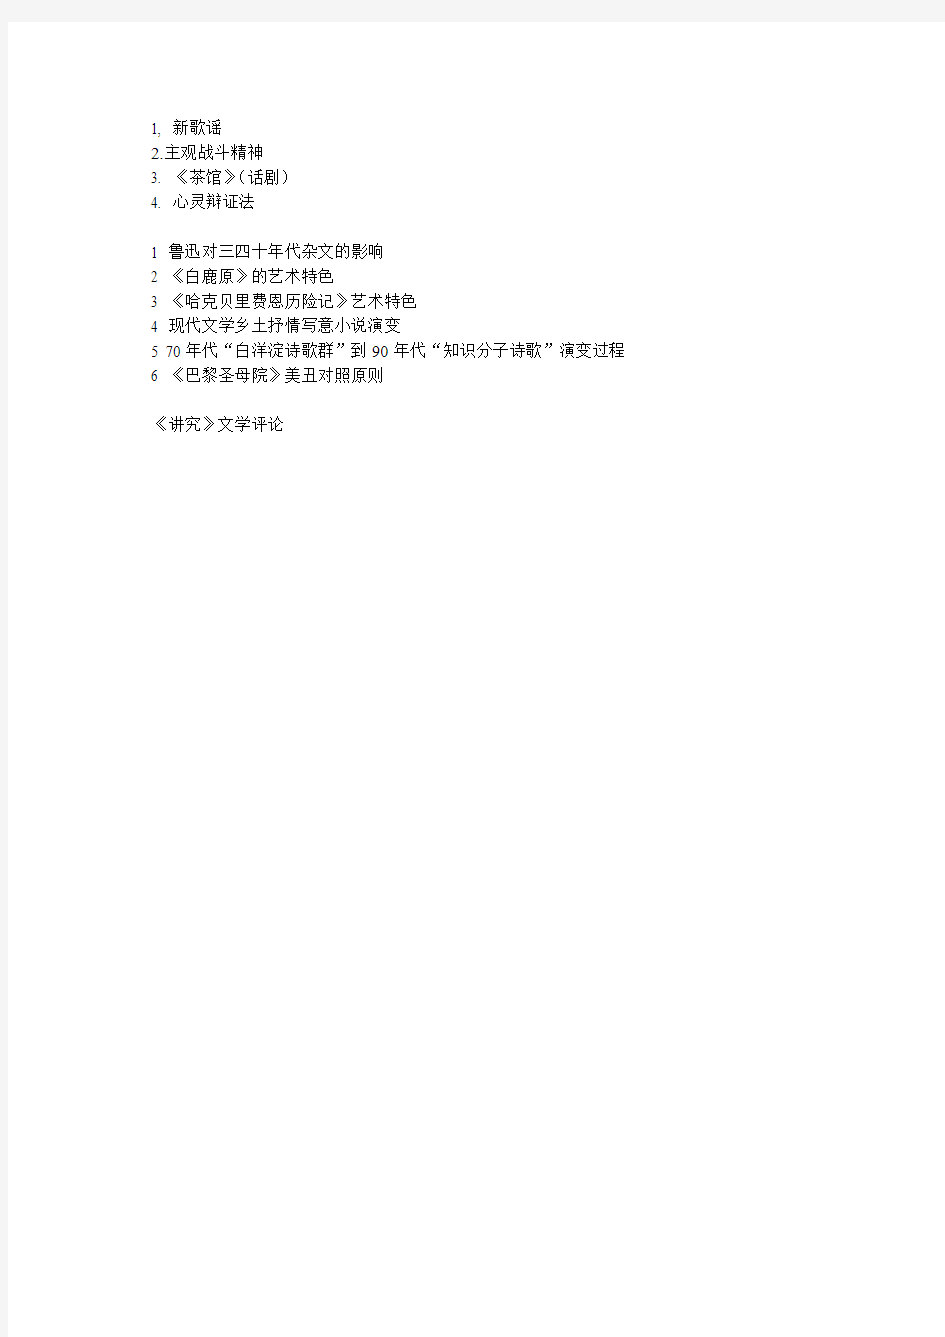 2013年河北师范大学研究生入学考试真题(稿纸抄录版)